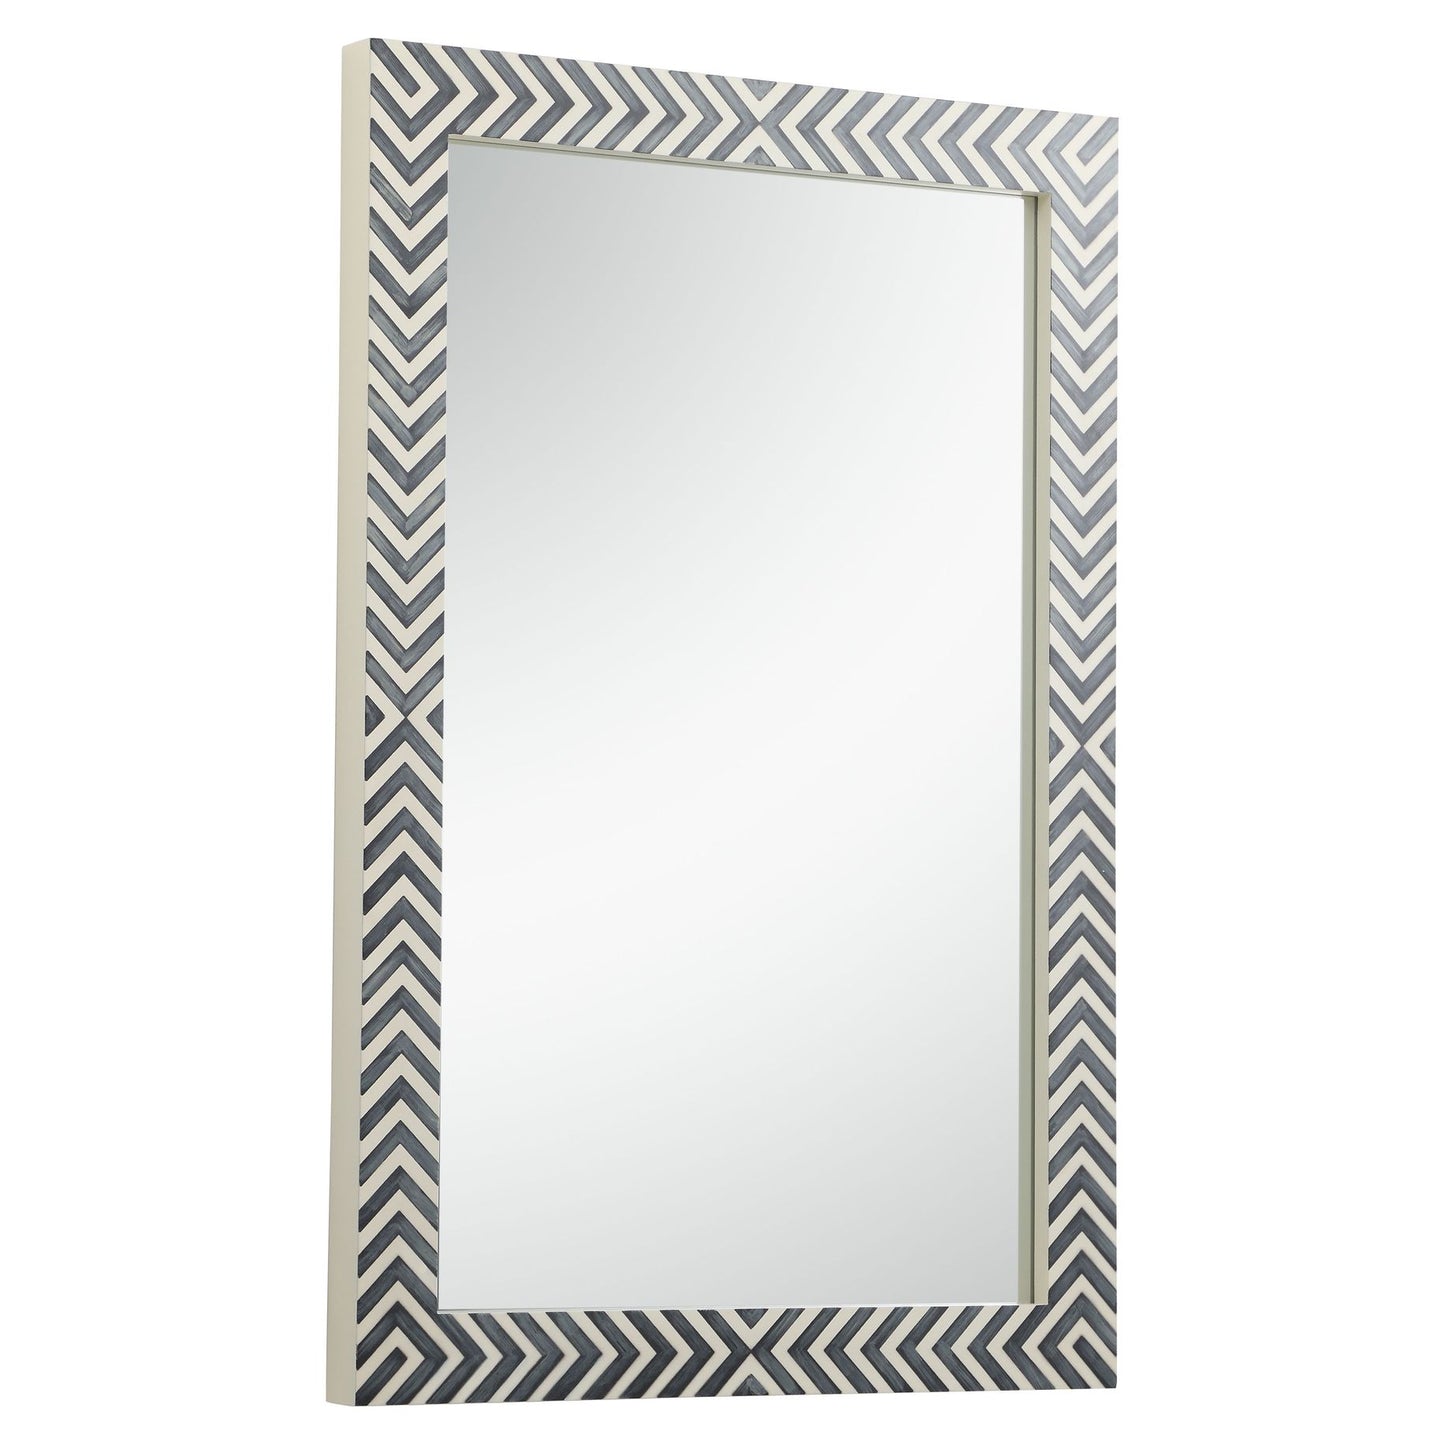 MR52842 Oullette 28" x 42" Rectangular Mirror in Chevron Frame